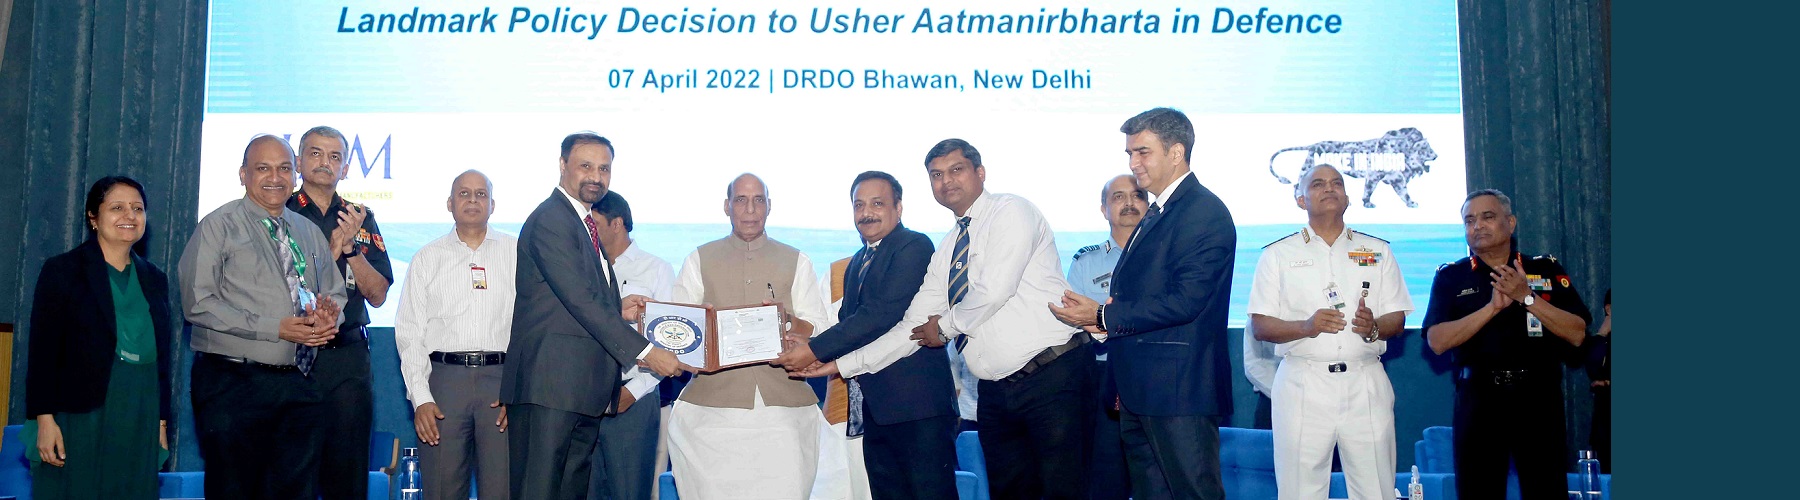 रक्षा मंत्री श्री राजनाथ सिंह नई दिल्ली में 07 अप्रैल 2022 को डीआरडीओ द्वारा विकसित प्रौद्योगिकियों के हस्तांतरण के लिए उद्योगों को लाइसेंसिंग समझौते सौंपते हुए।